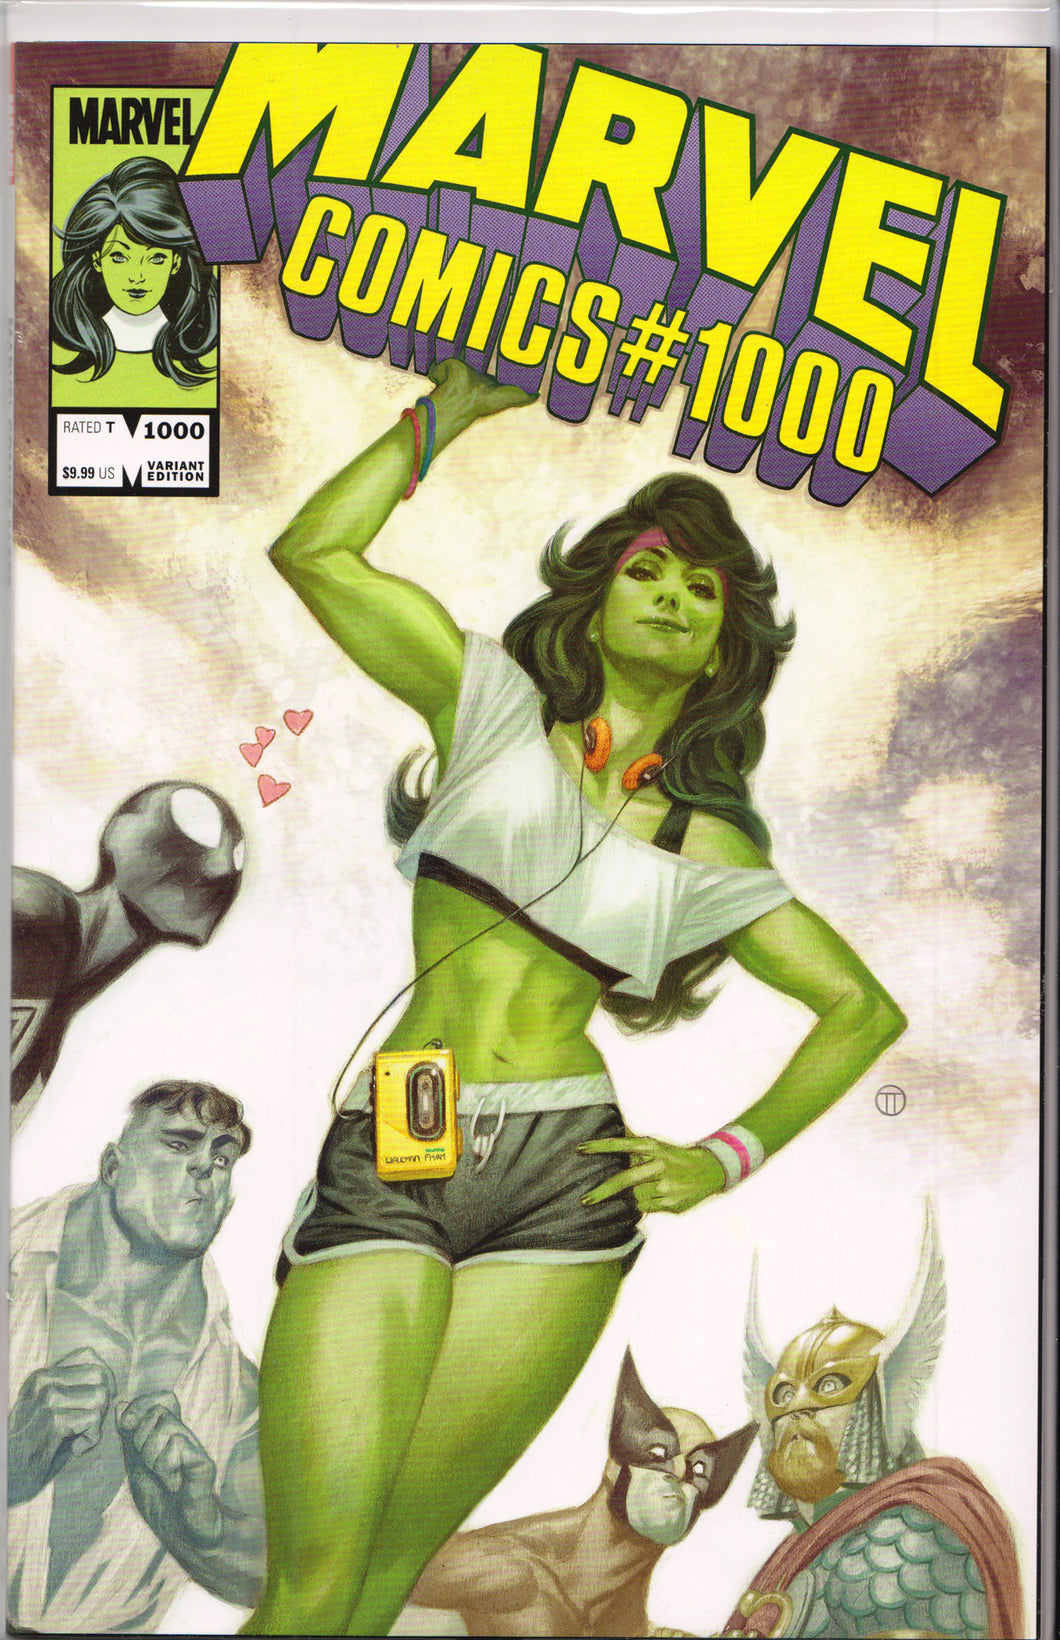 MARVEL COMICS #1000 (TEDESCO VARIANT) COMIC BOOK ~ Marvel Comics